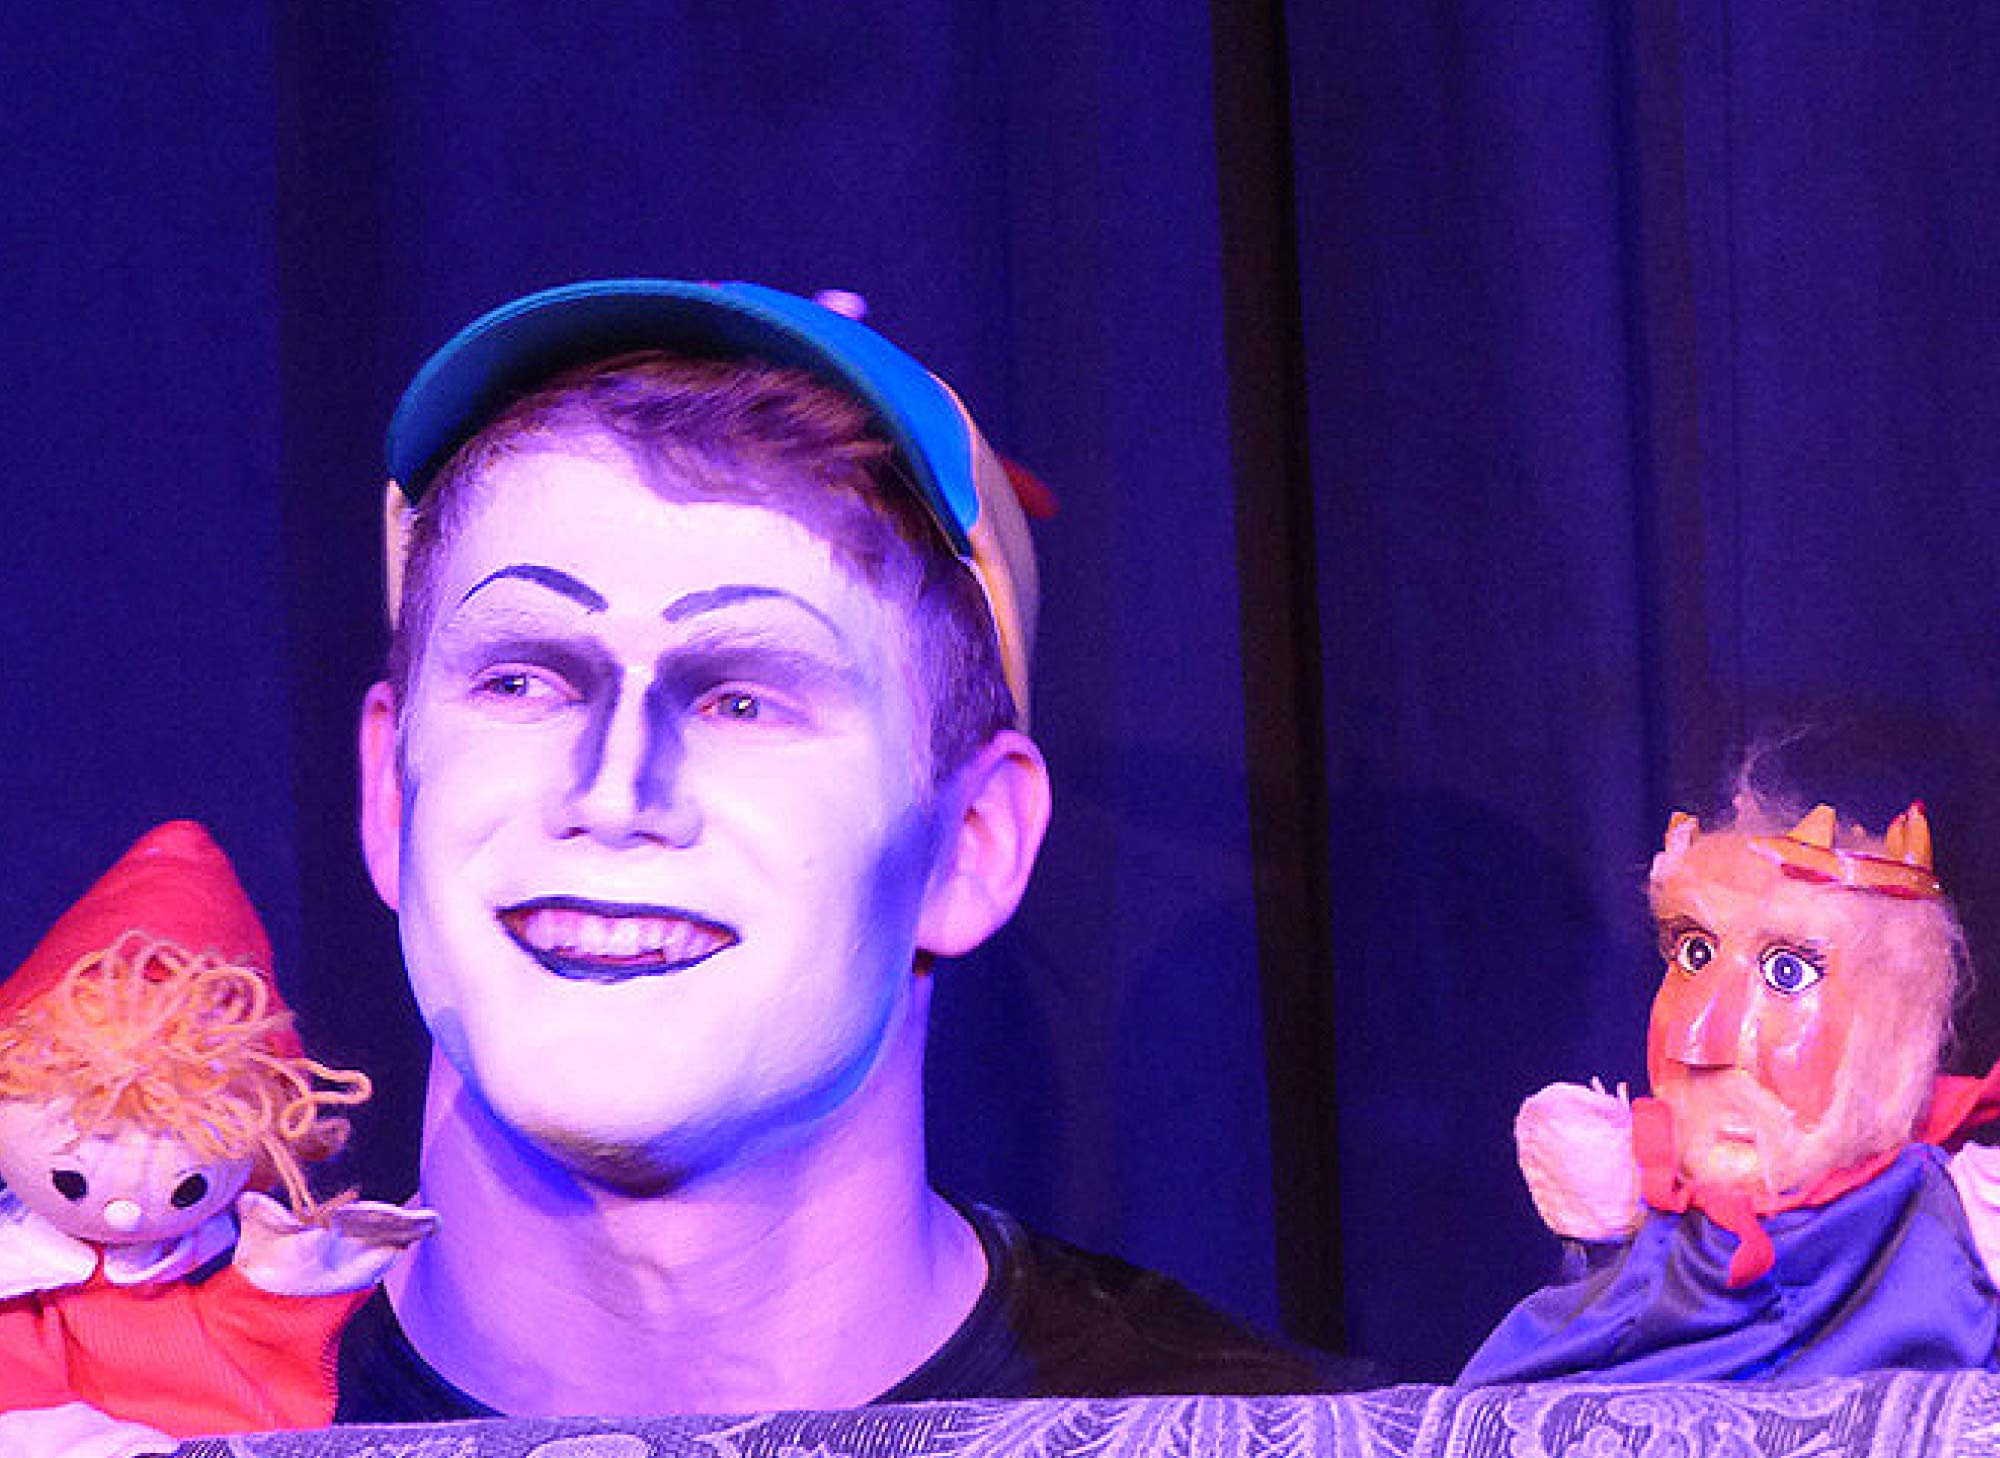 Aus einer Theatervorstellung: Ein Junge mit weiß geschminkten Gesicht und blau-gelber Kappe und zwei Kasperle-Figuren sind vor einem blauen Vorhang zu